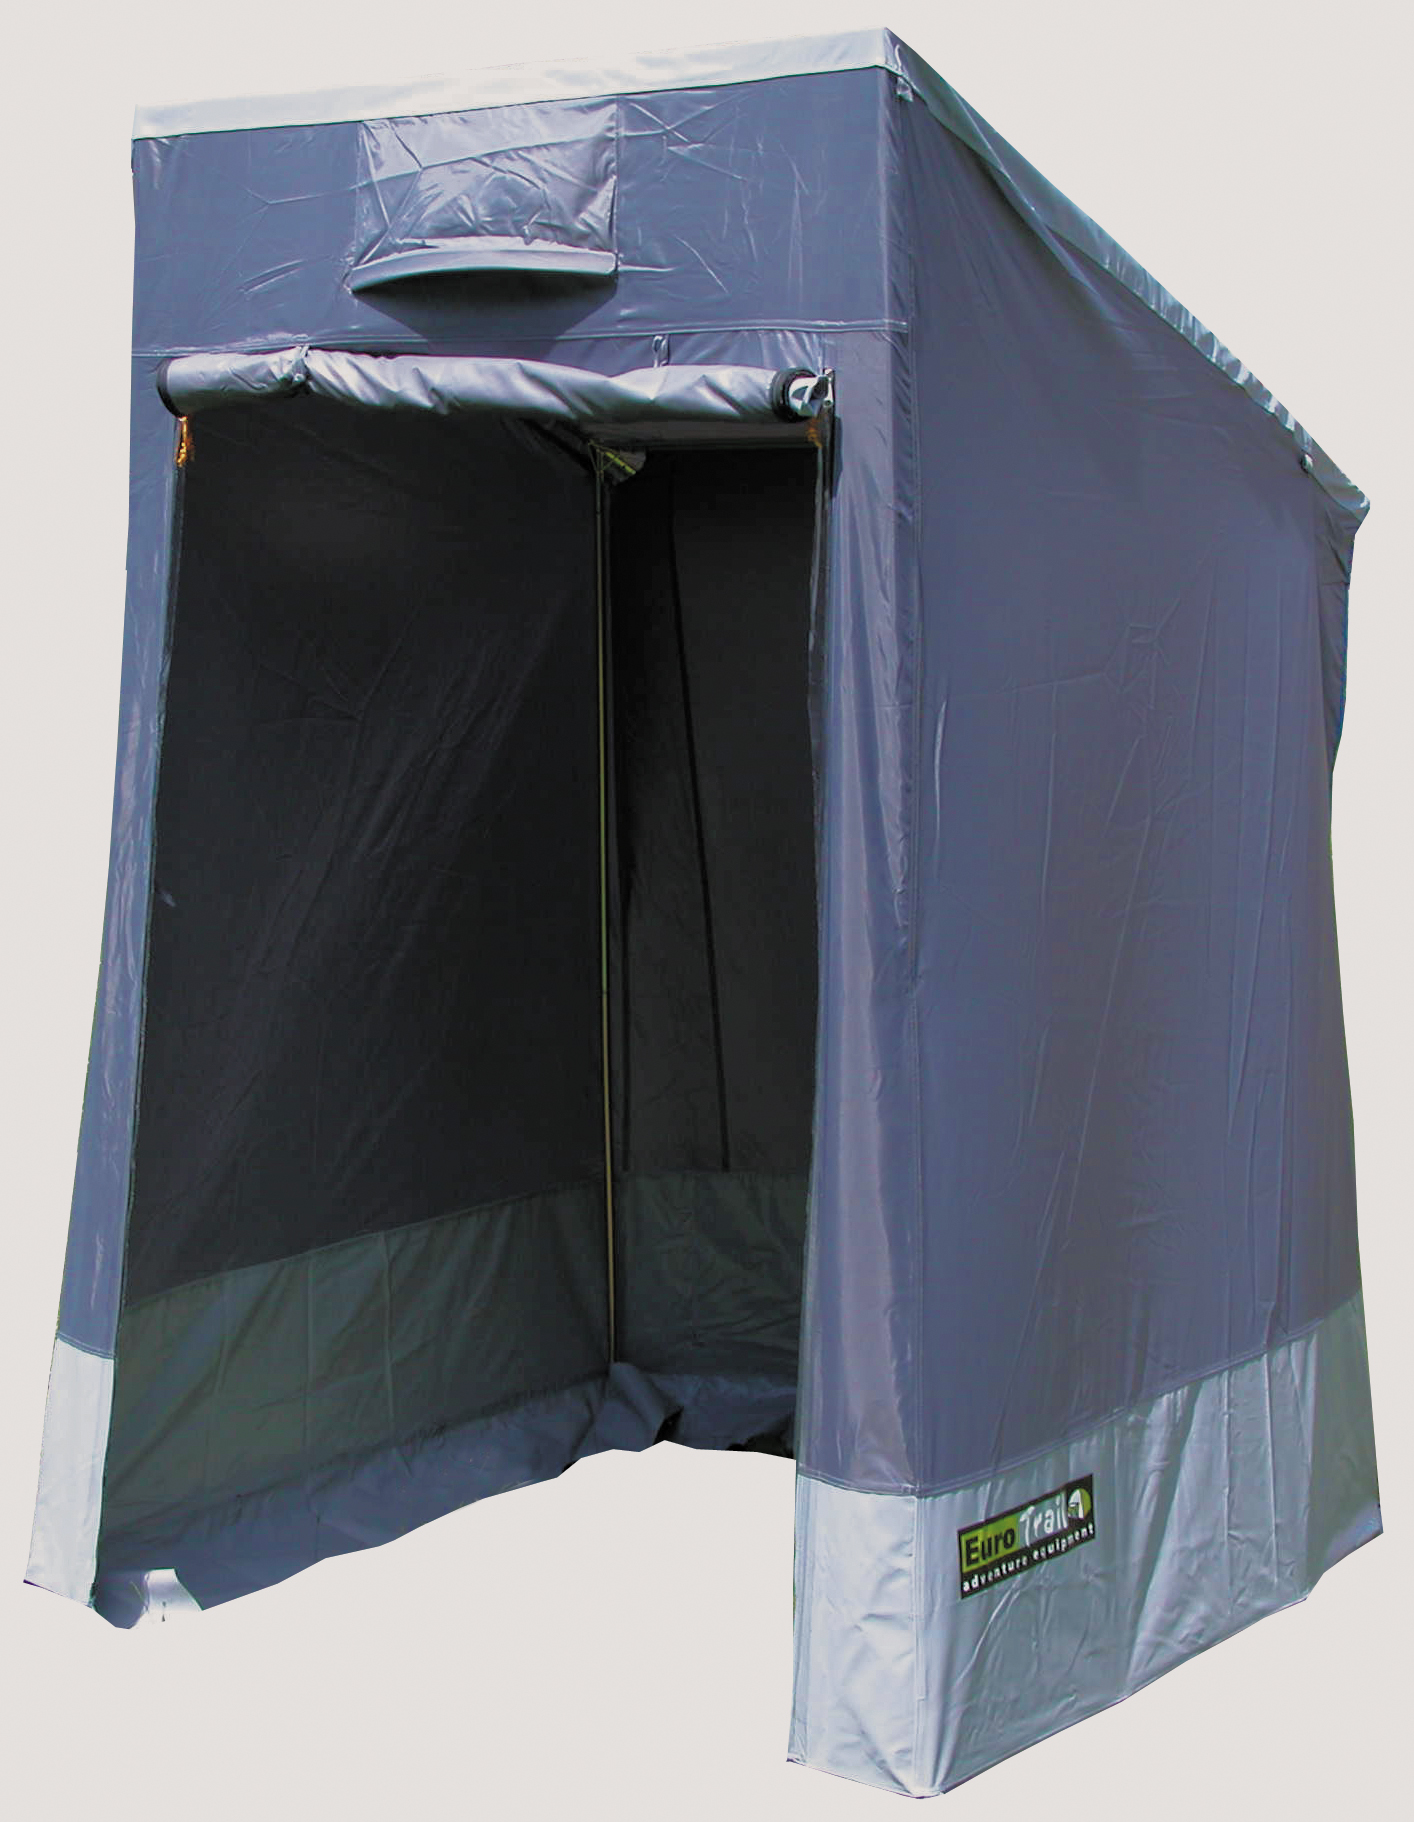 Eurotrail Organiser Motorhome Storage for Camping Caravan Campervan 6 Pockets 